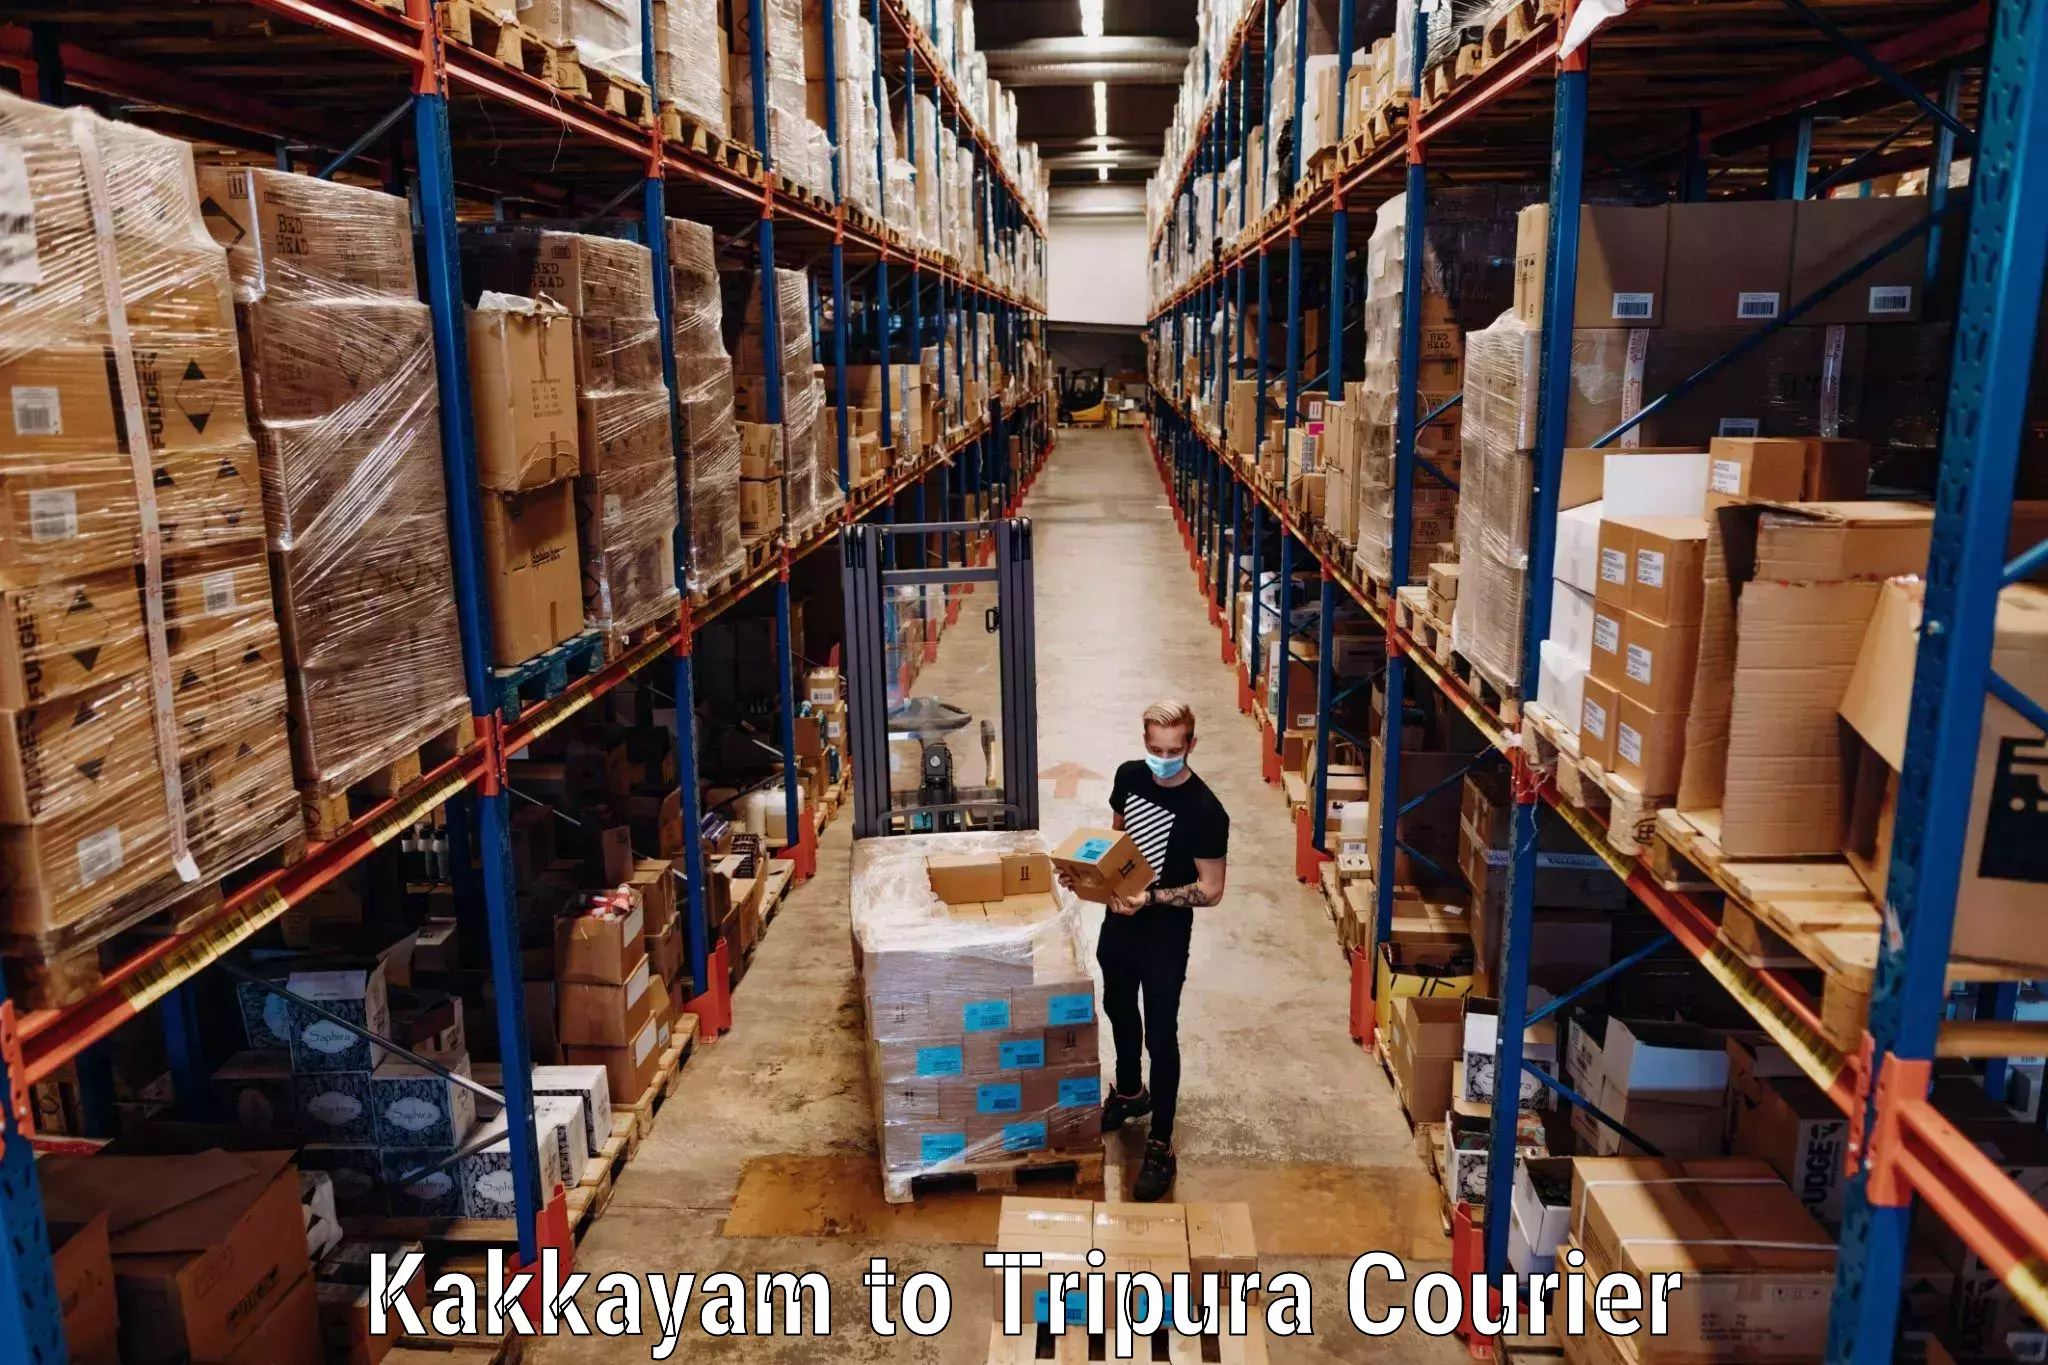 Luggage shipment specialists Kakkayam to Kailashahar